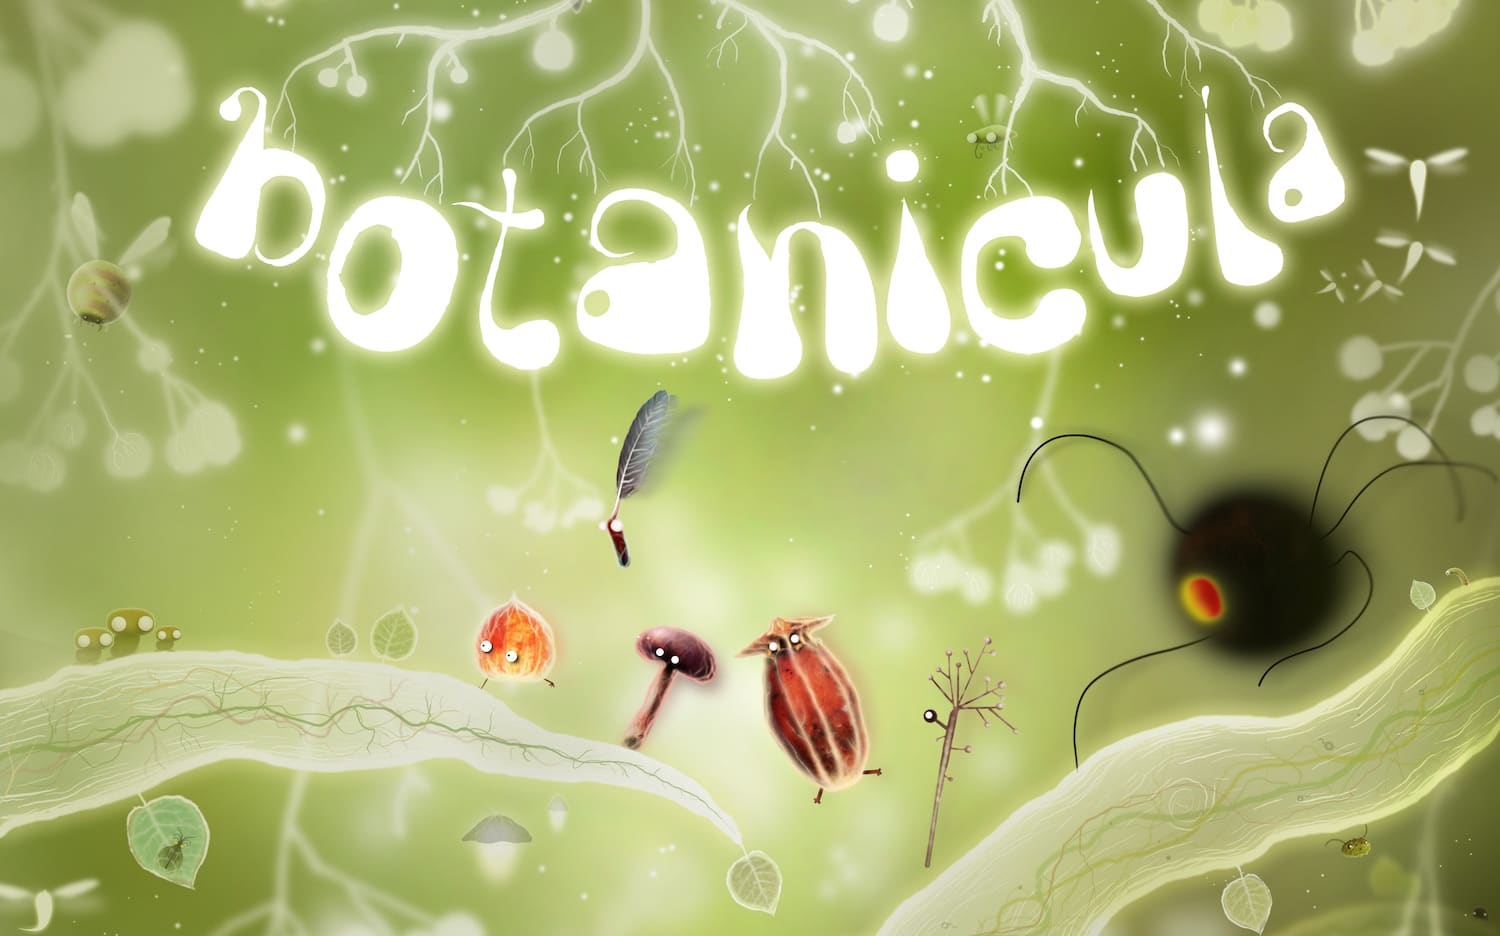 Обзор игры Botanicula: атмосферный приключенческий квест для iPhone, iPad и Mac